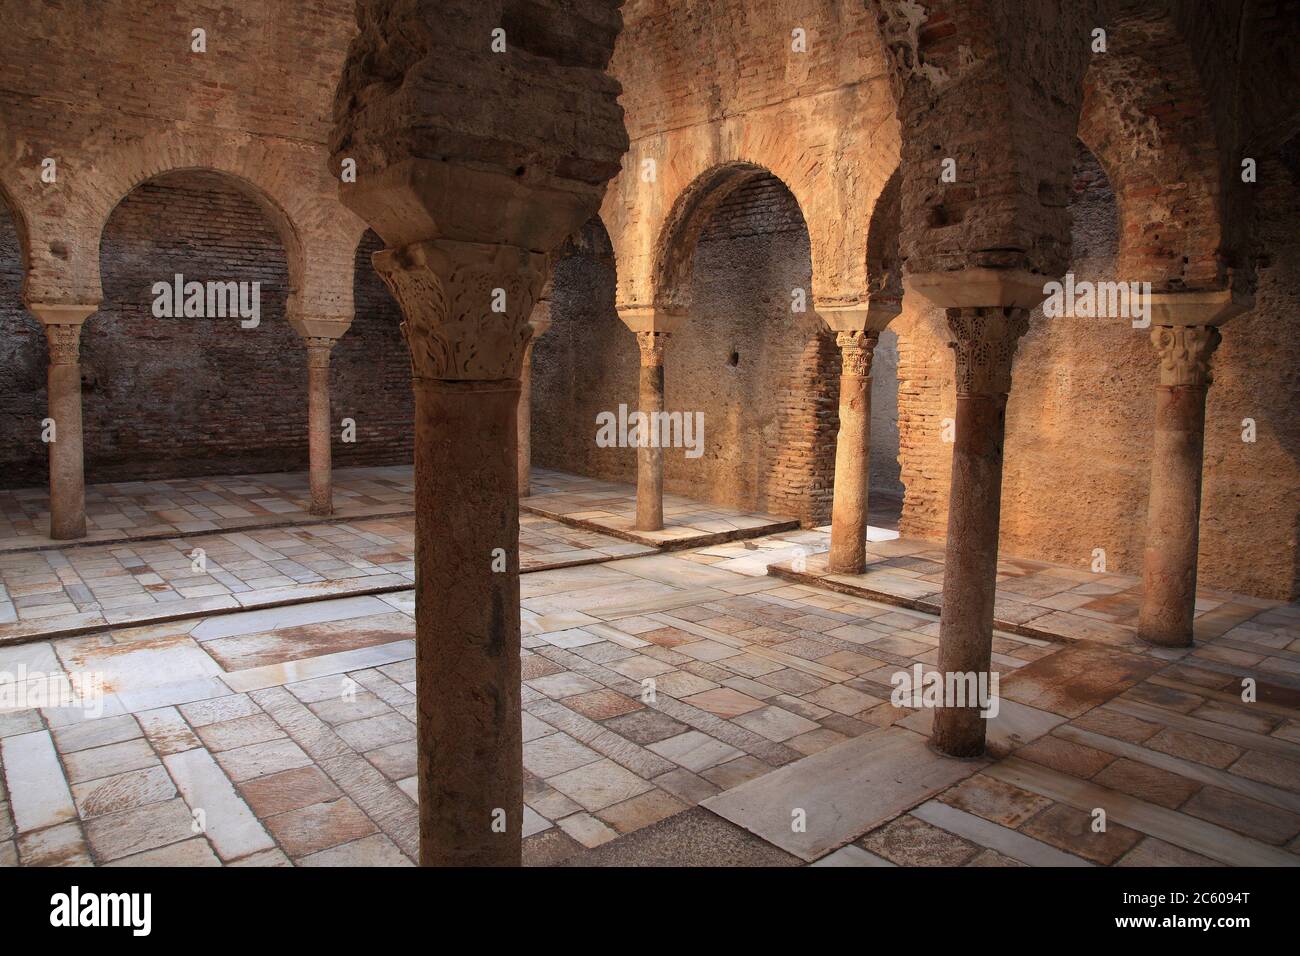 El Bañuelo, baño árabe del siglo XI. Granada. Foto de stock